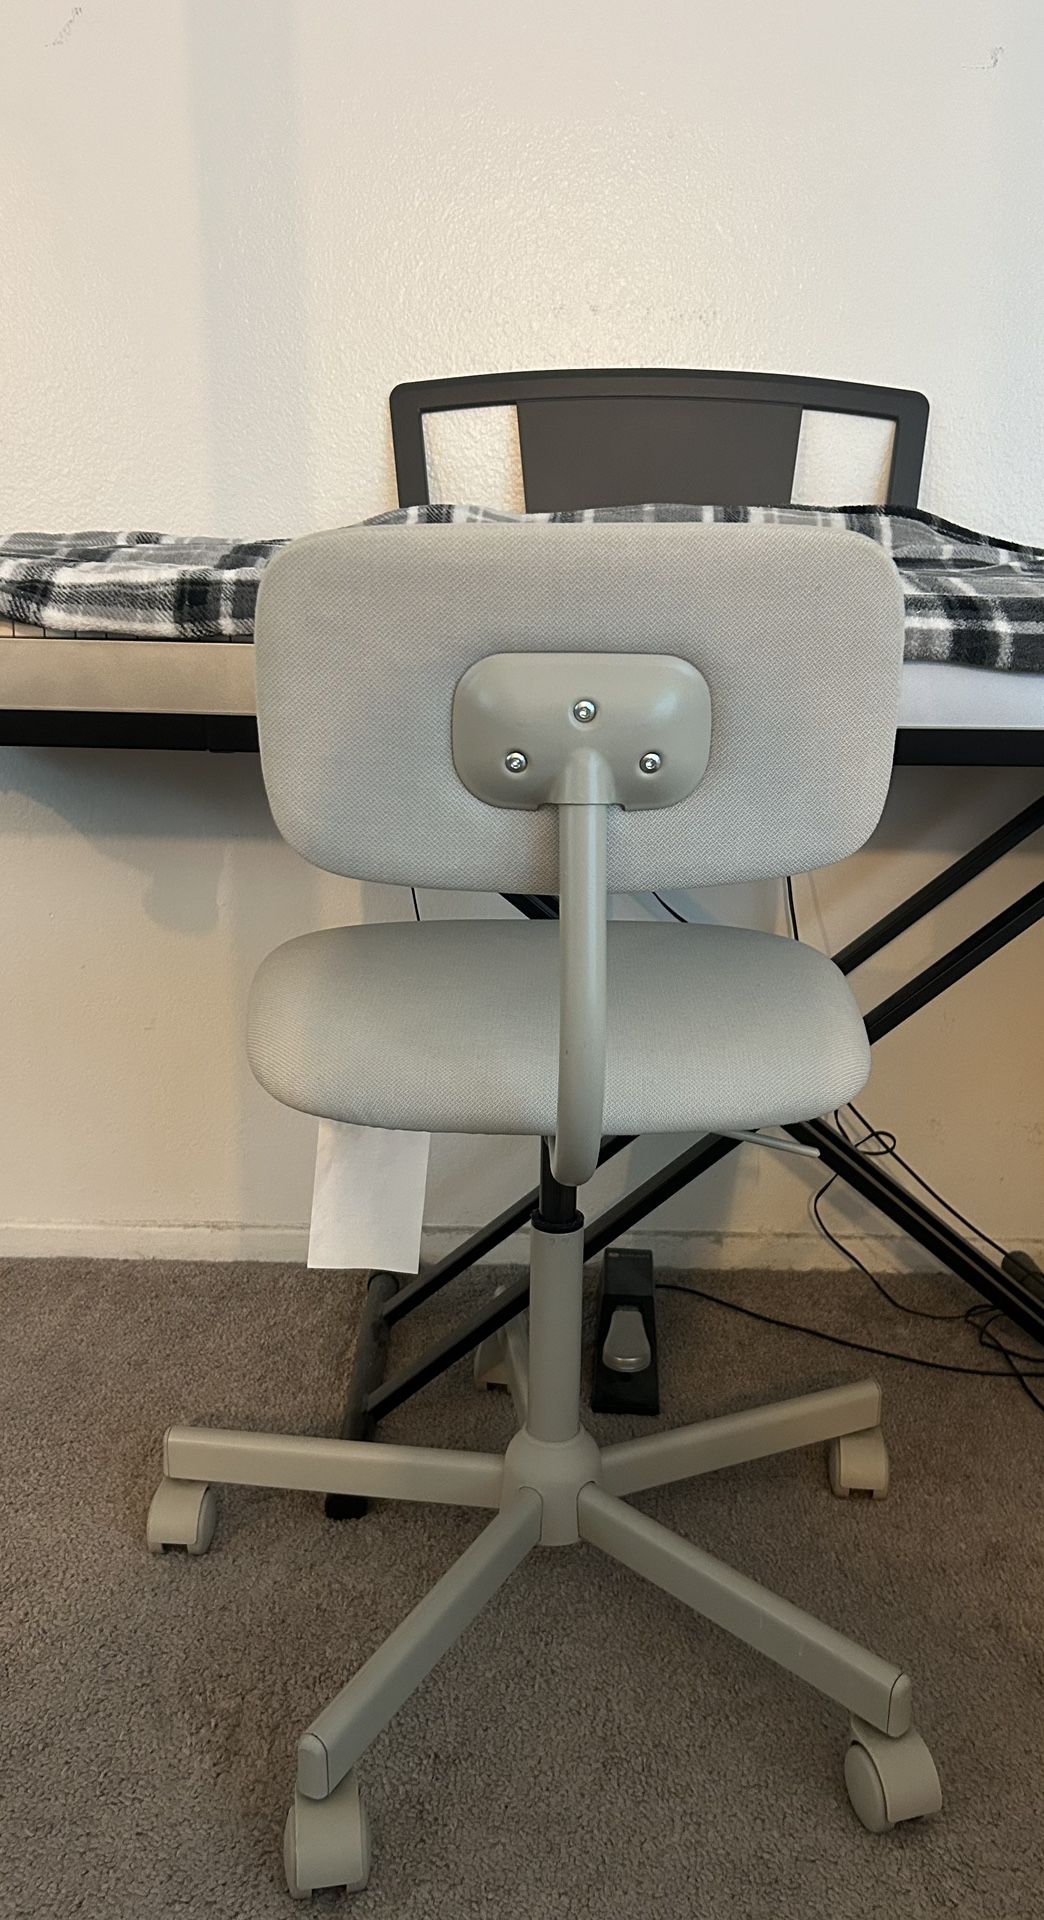 IKEA Bleckberget Chair